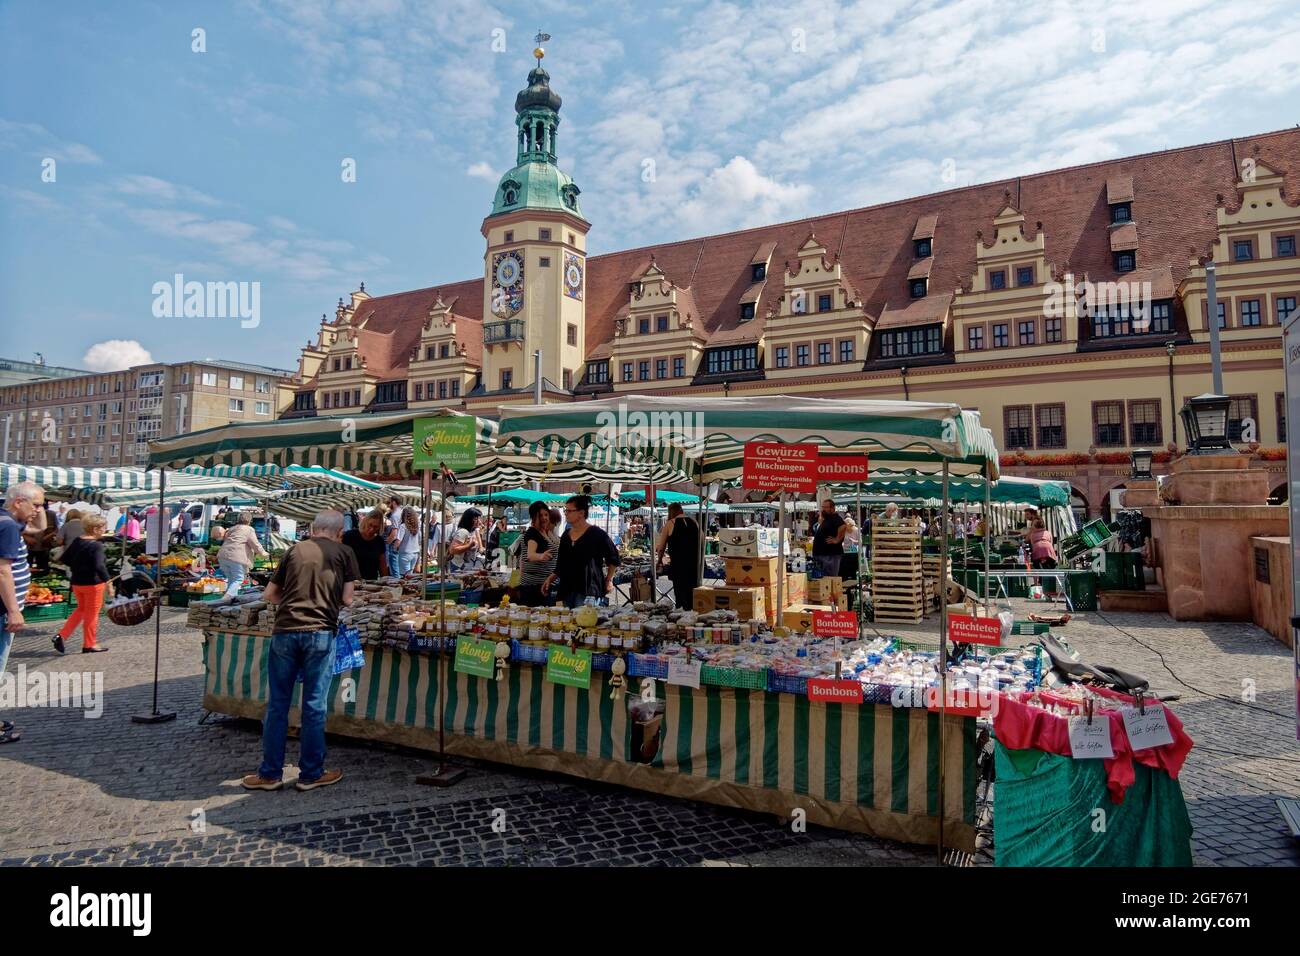 Markt vor dem alten Rathaus von Leipzig, Altstadt, Marktplatz, Sachsen, Deutschland Stock Photo